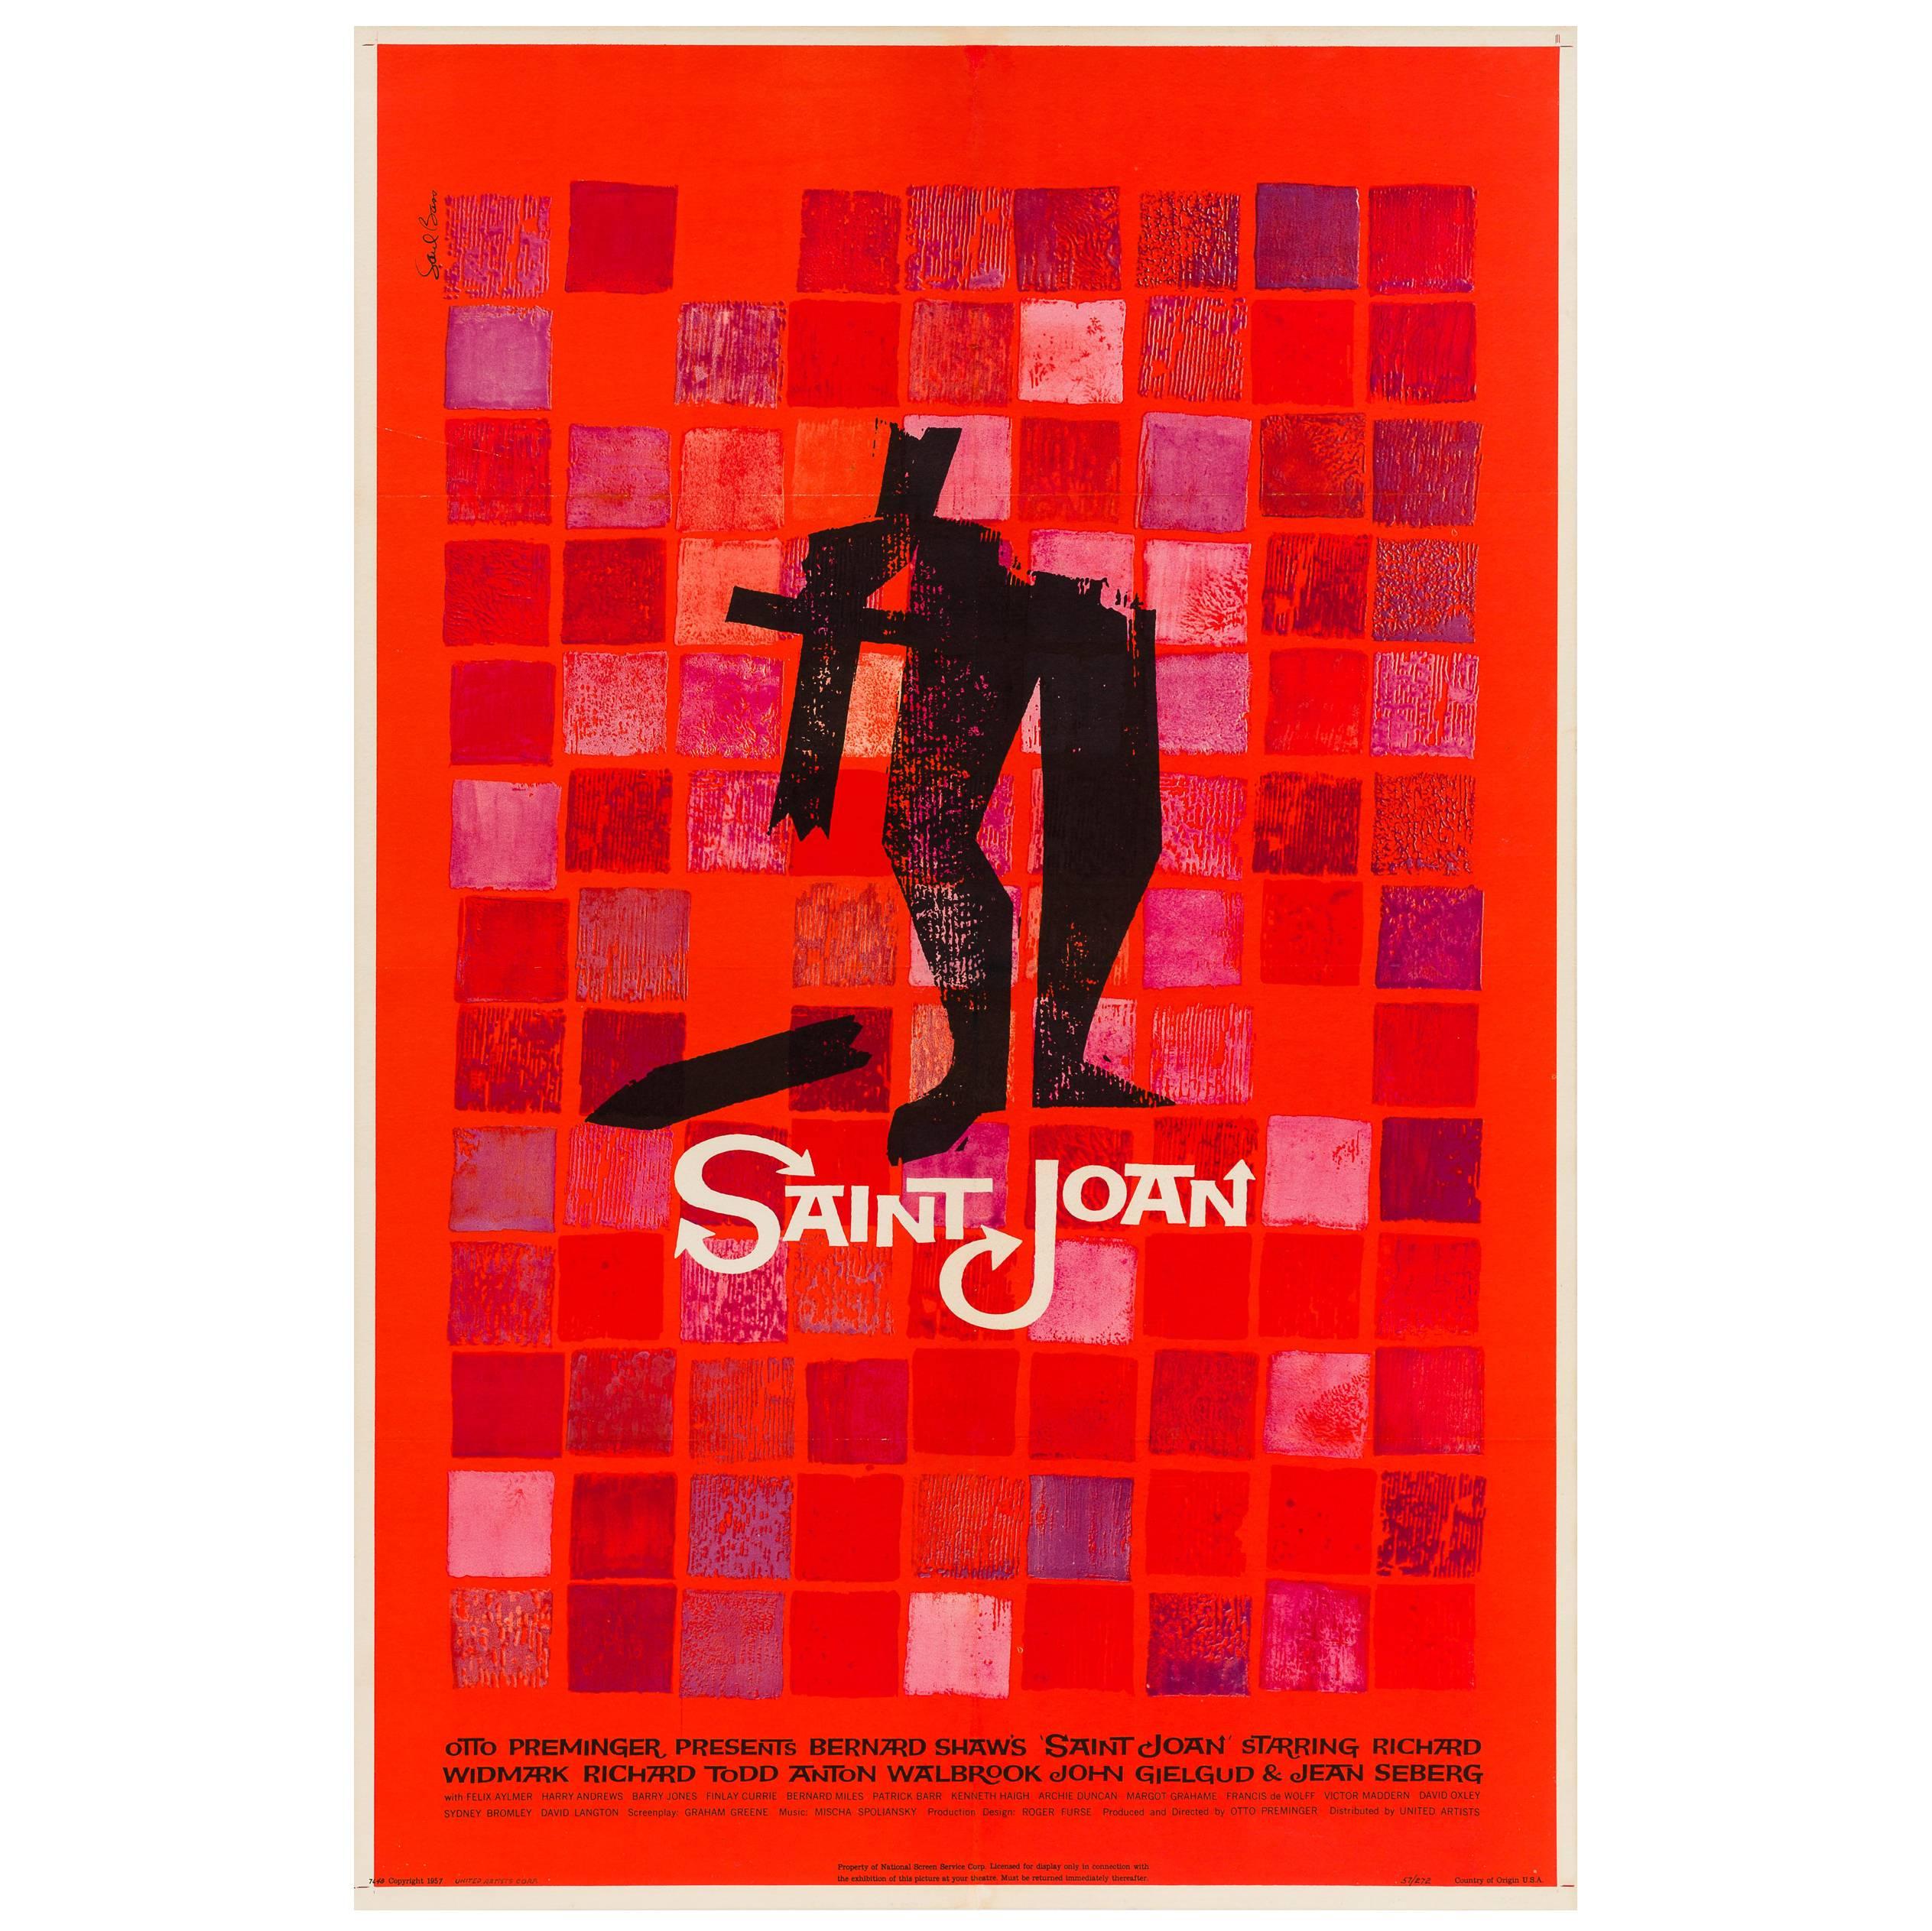 Saint Joan Original American Film Poster, Saul Bass, 1957